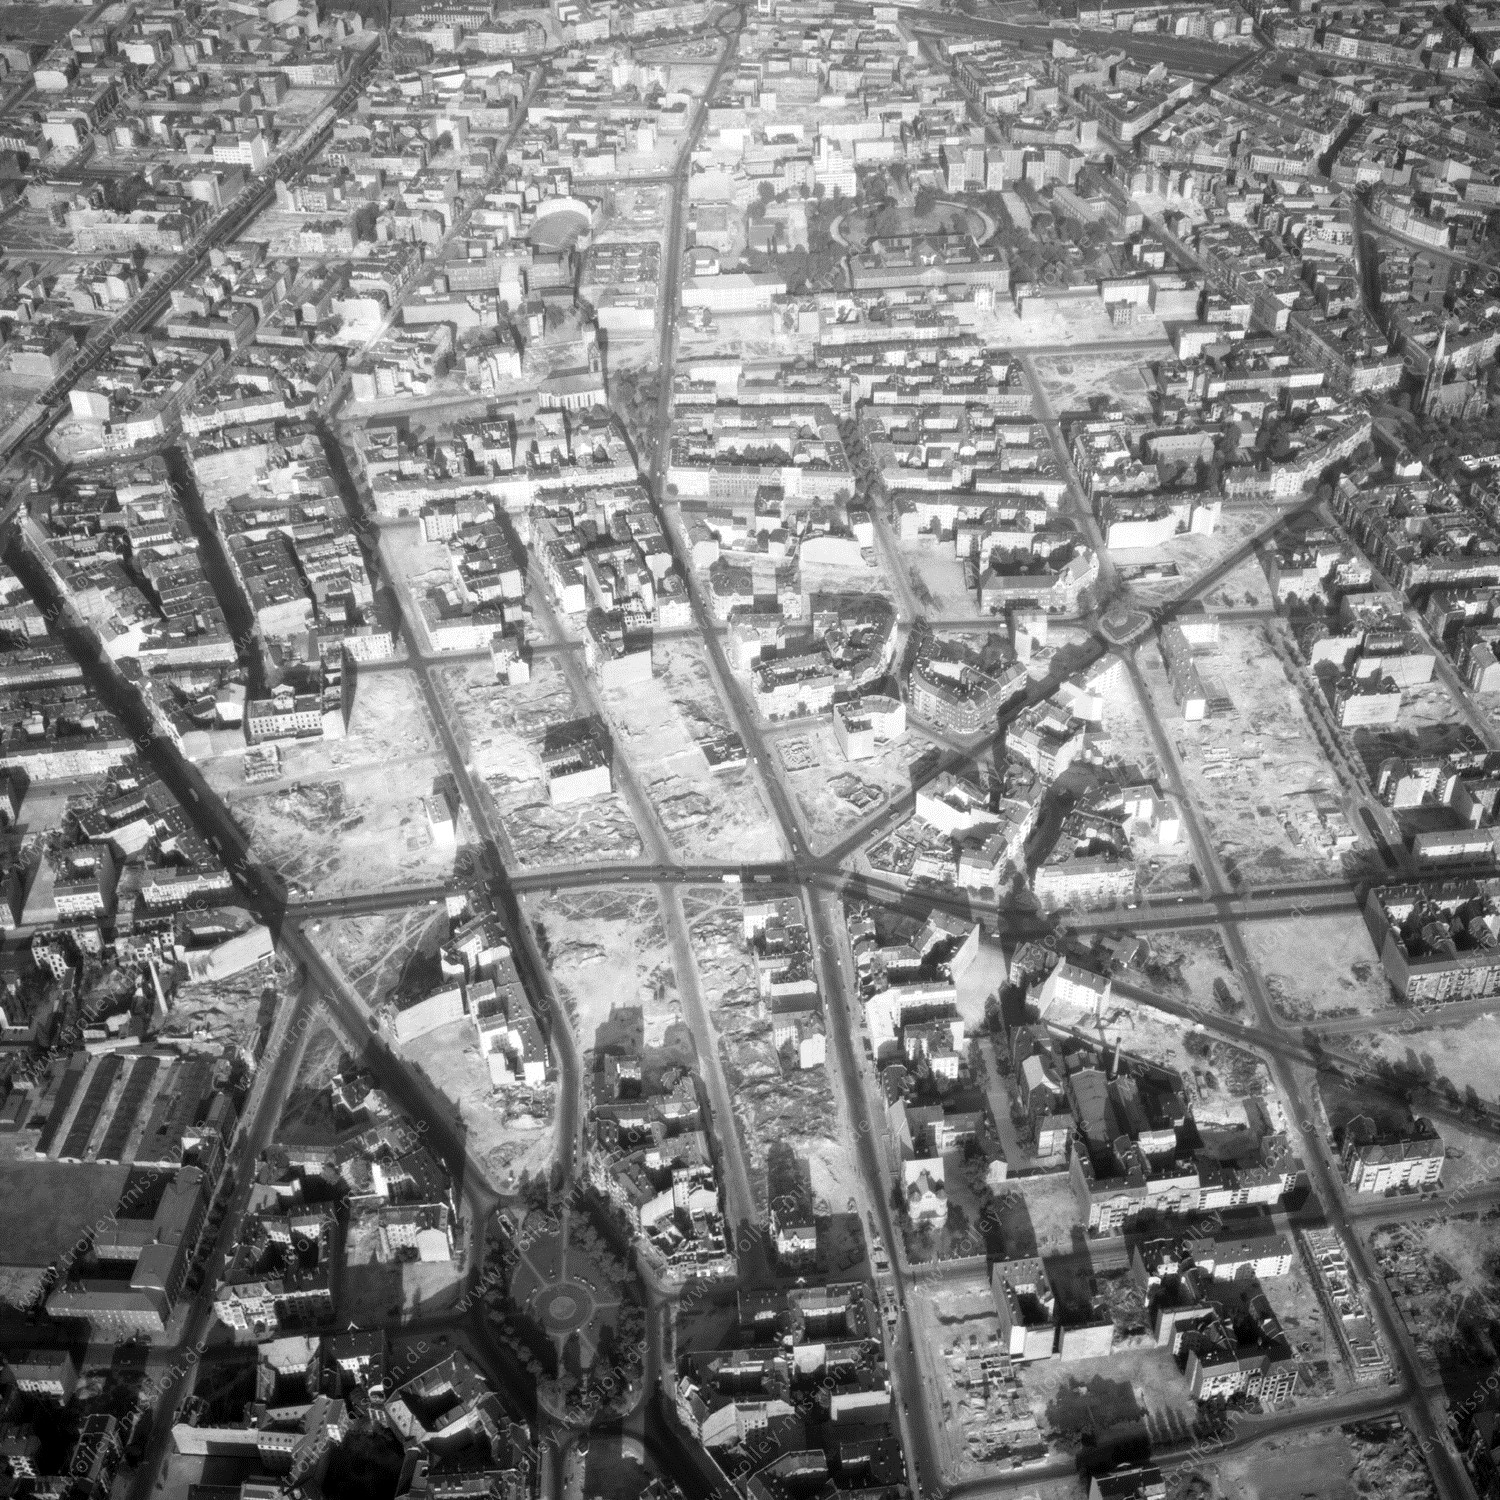 Alte Fotos und Luftbilder von Berlin - Luftbildaufnahme Nr. 06 - Historische Luftaufnahmen von West-Berlin aus dem Jahr 1954 - Flugstrecke Foxtrot